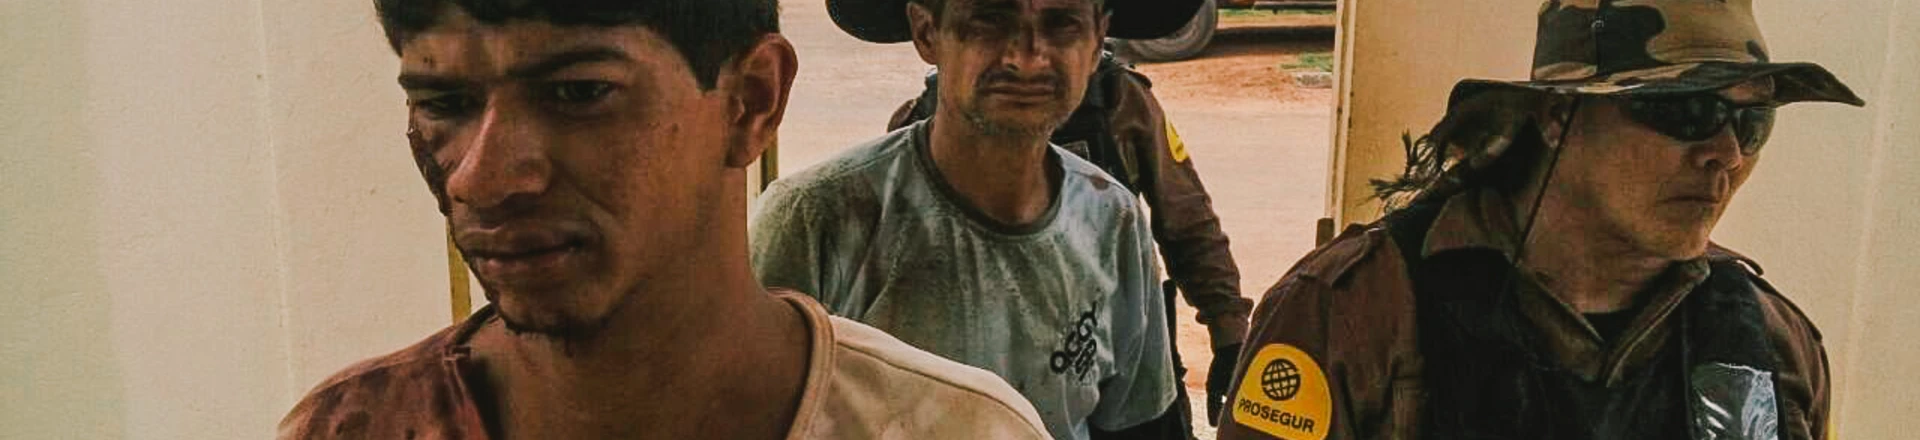 Seguranças da Vale são indiciados por ataque violento contra agricultores no Pará